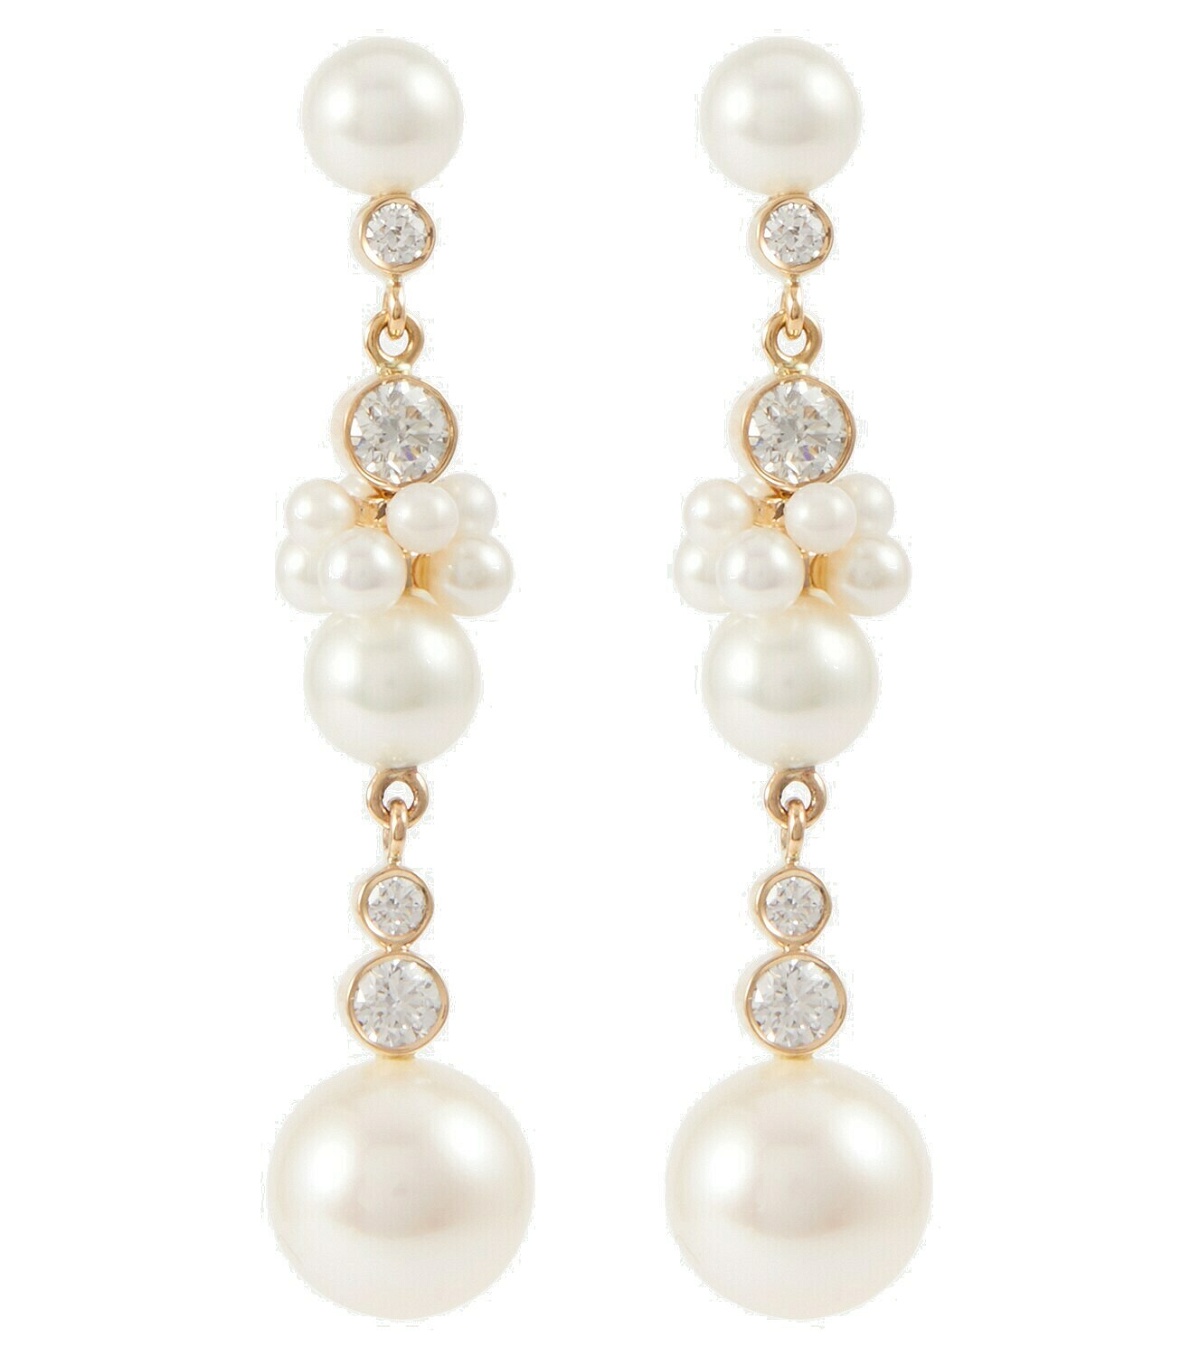 Sophie Bille Brahe - Rêve de Tulipe 14kt gold earrings with diamonds ...